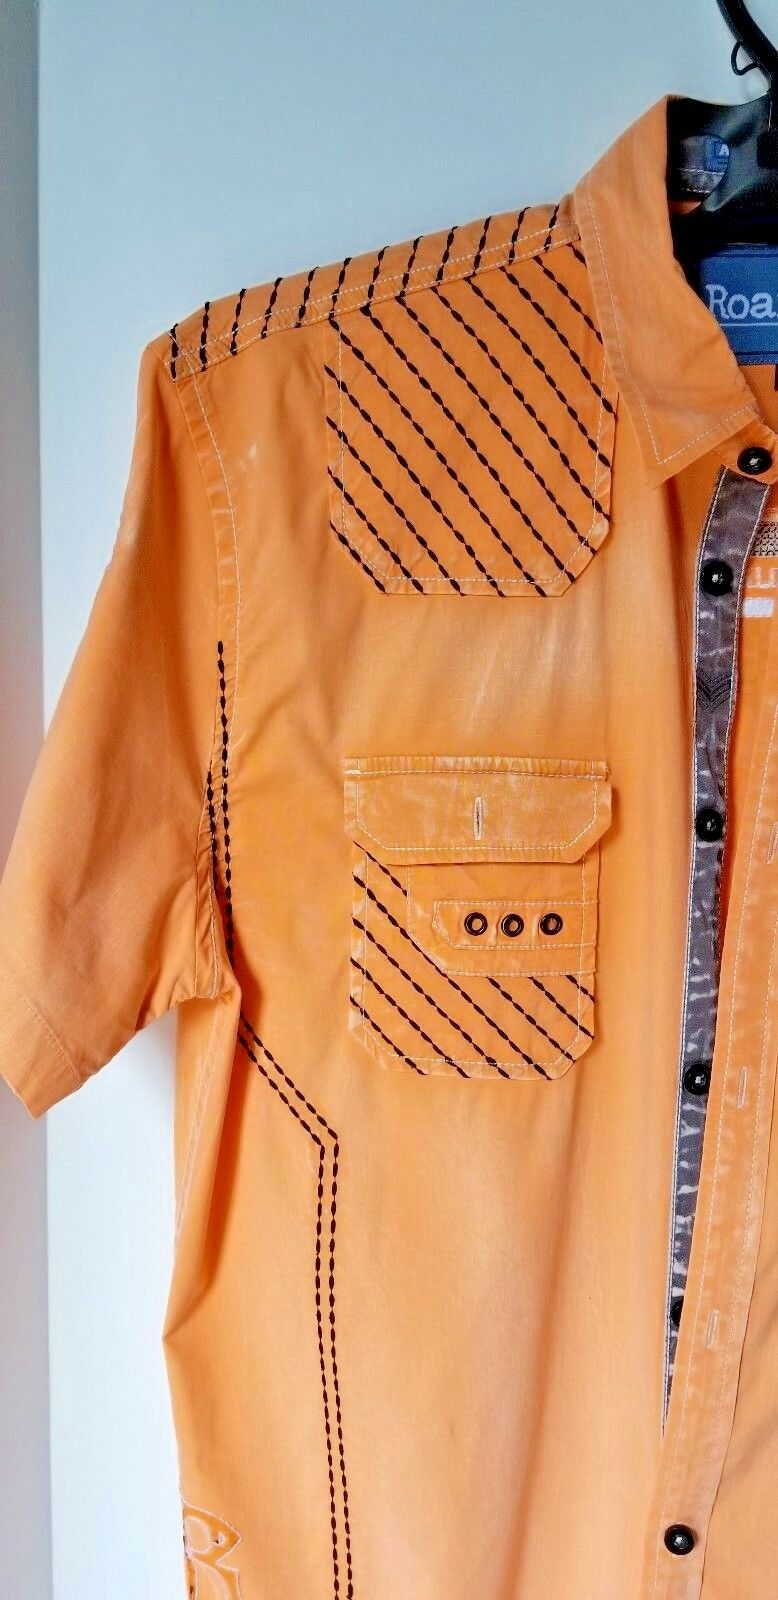 Roar Orange Short Sleeve Shirt sized Large